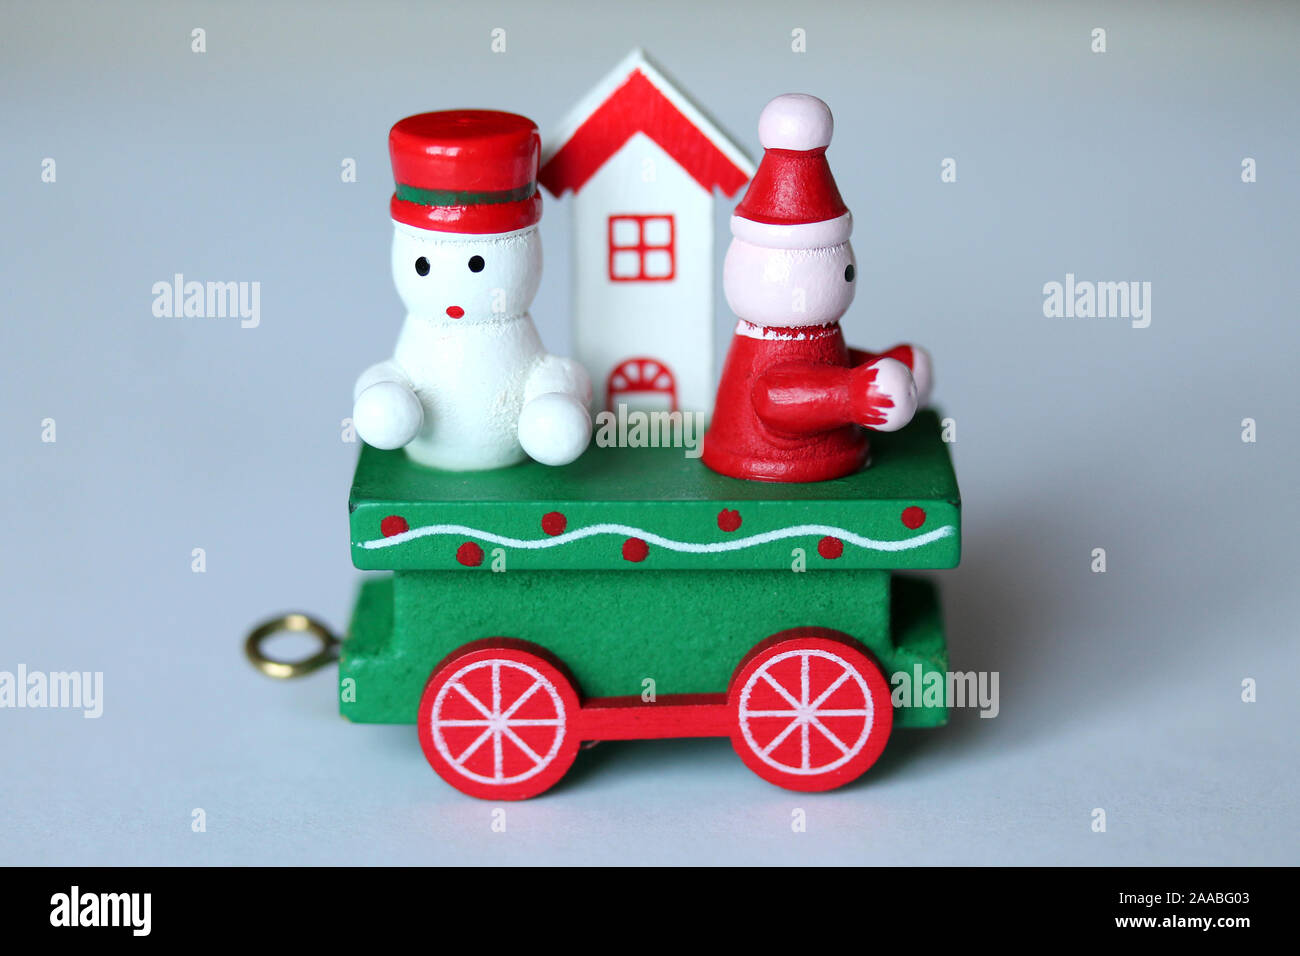 Tren de madera festiva verde coche o transporte sobre fondo blanco. Navidad  y Año nuevo juguete con figuras de muñeco de nieve, gnome y de la casa.  Tarjeta de felicitación, po Fotografía